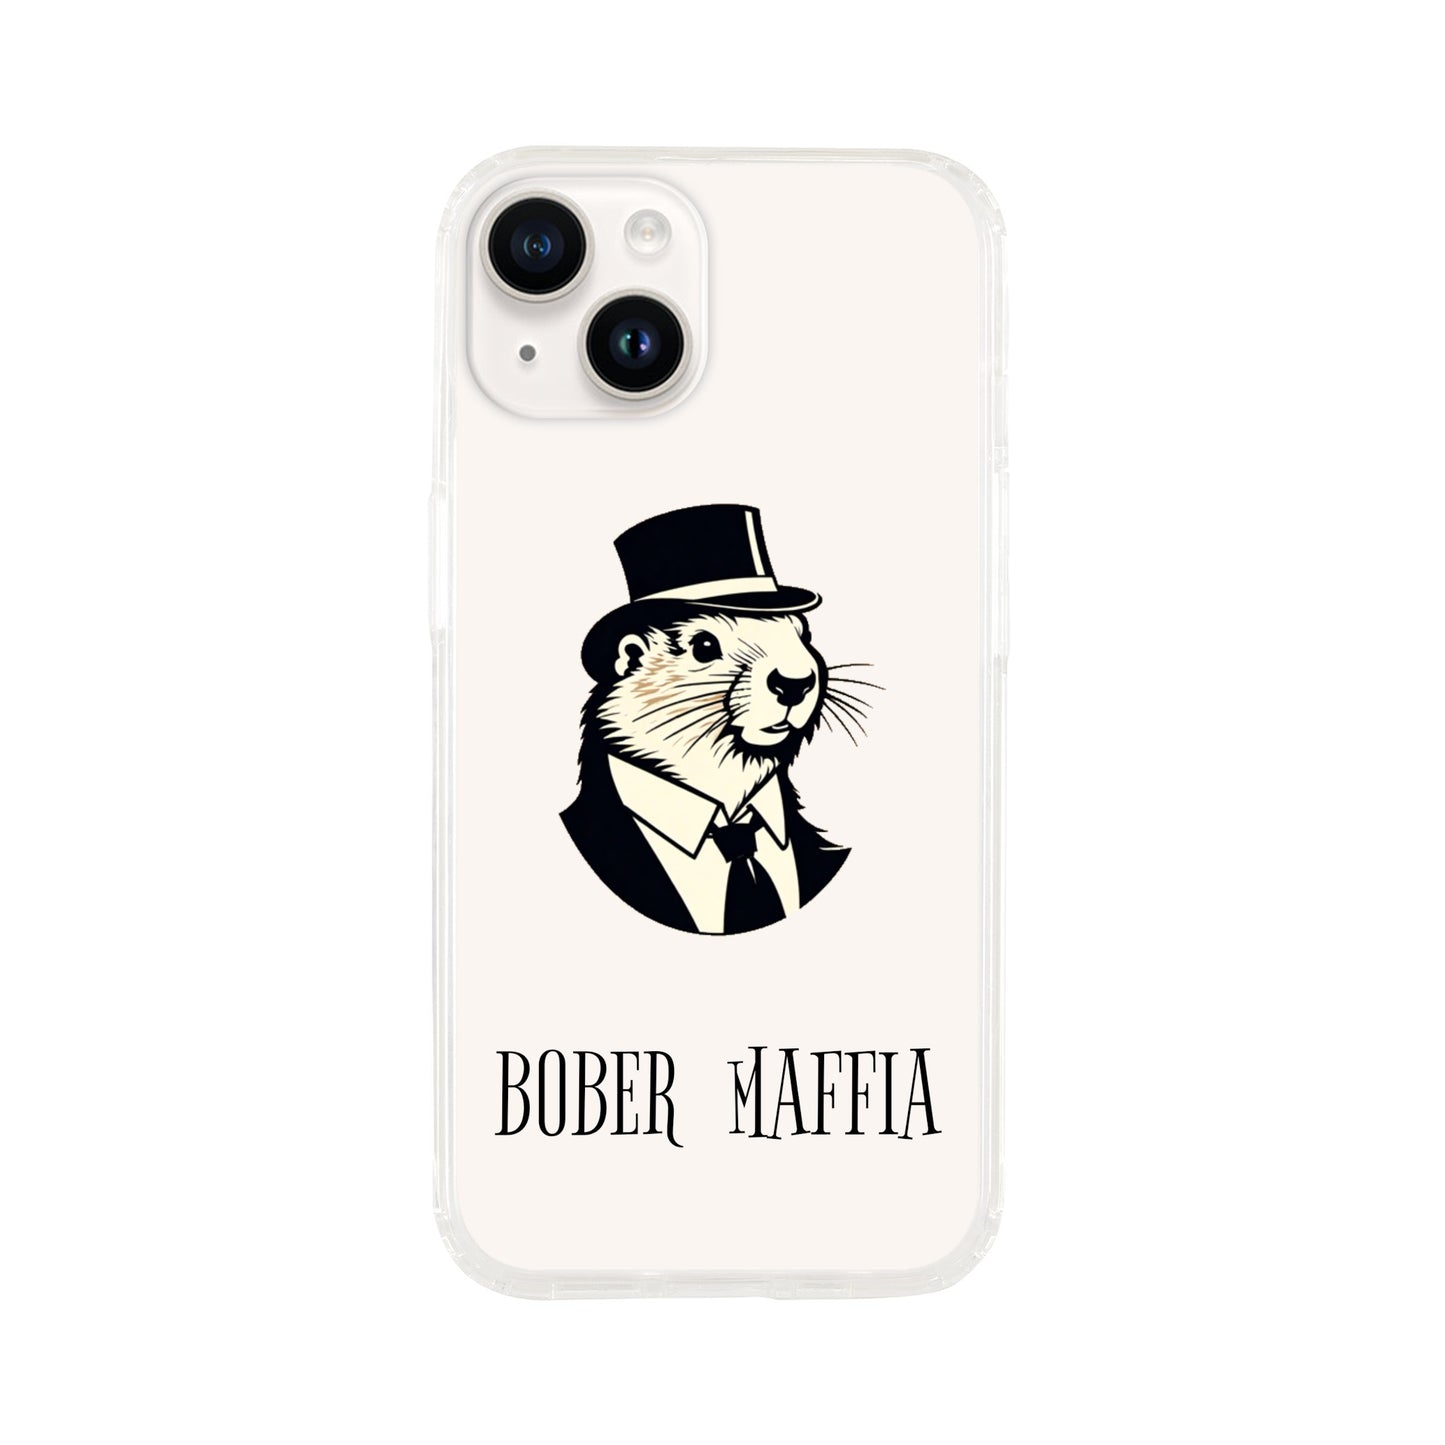 Bober Maffia - iPhone